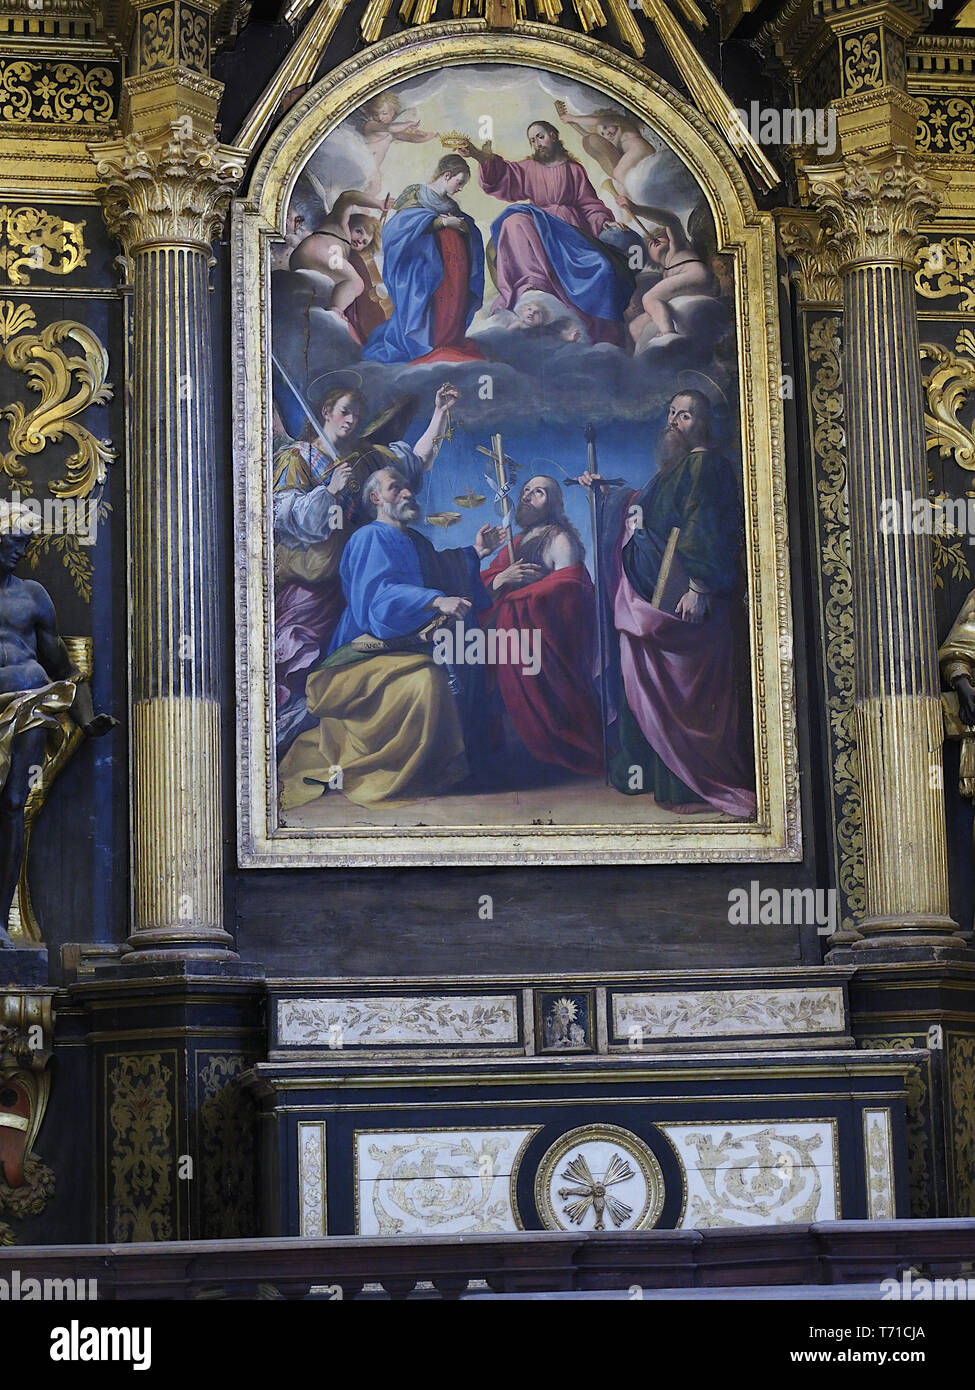 Todi Umbria Italia Italy. 'Incoronazione della Vergine' Coronation of the Virgin with saints (1618) oil on canvas altarpiece by Andrea Polinori. Altar Stock Photo